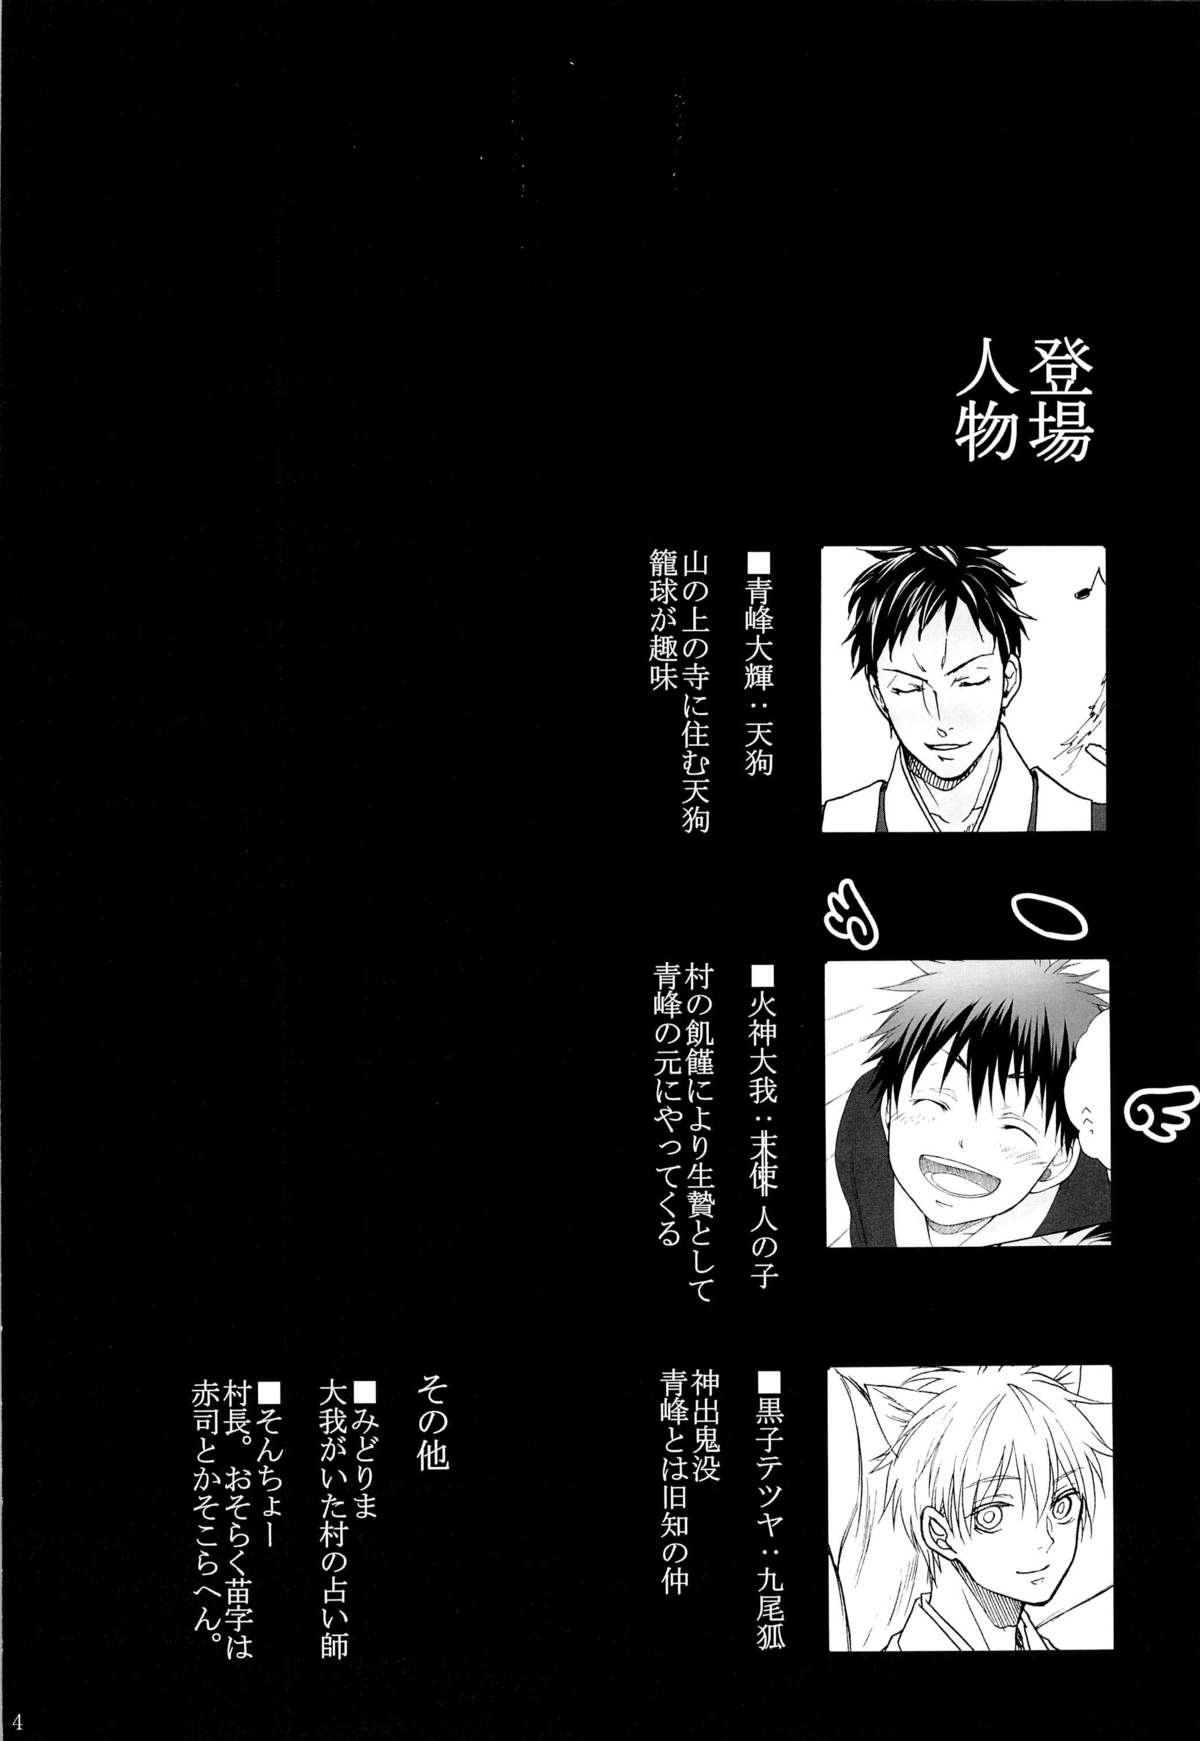 Young Tengu to Kumotsu - Kuroko no basuke Polish - Page 4